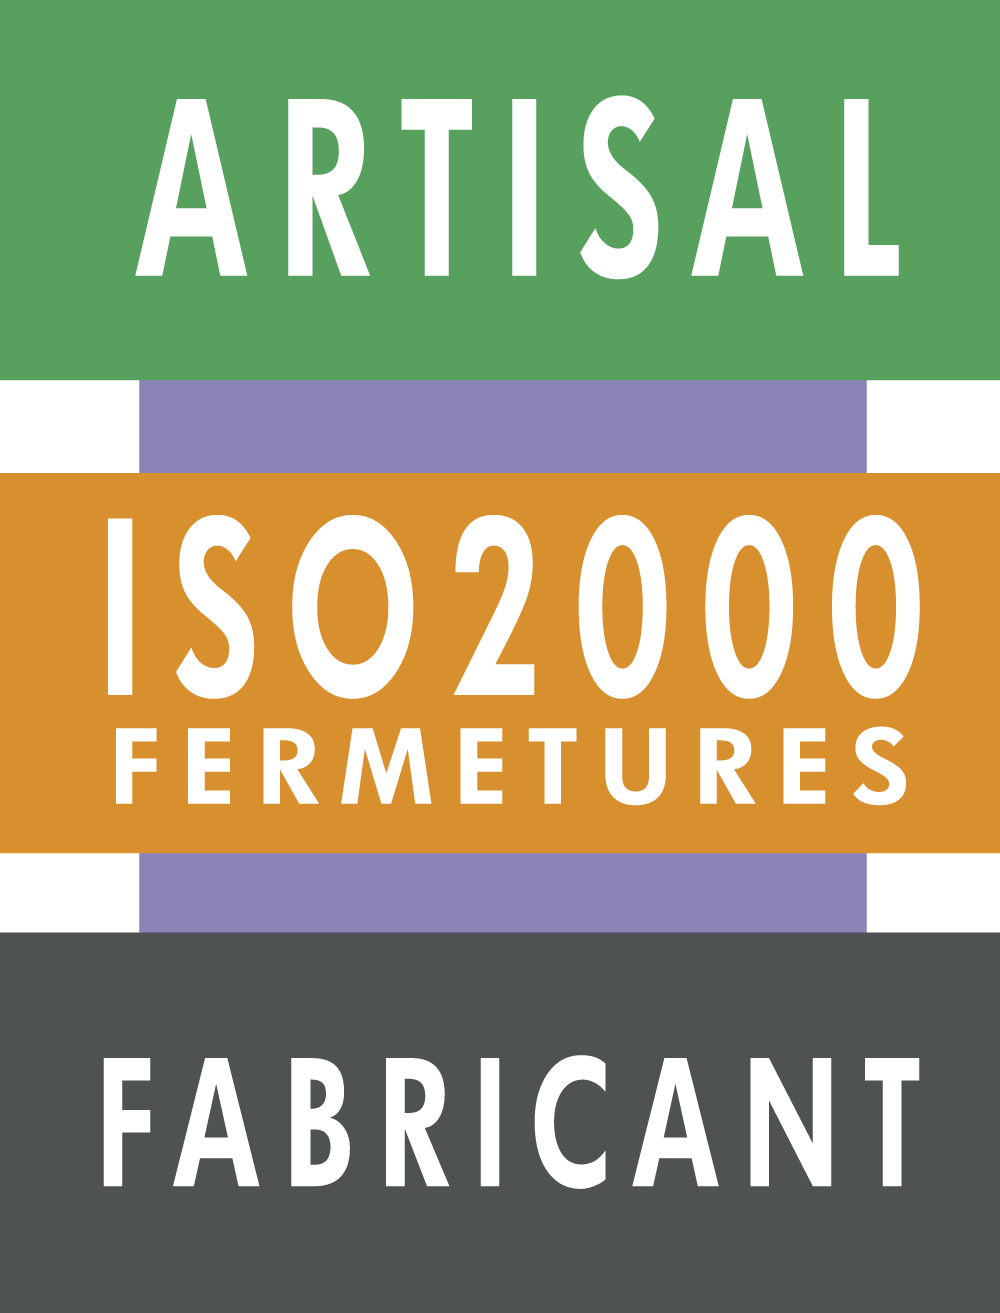 logo-ARTISAL ISO 2000 FERMETURES